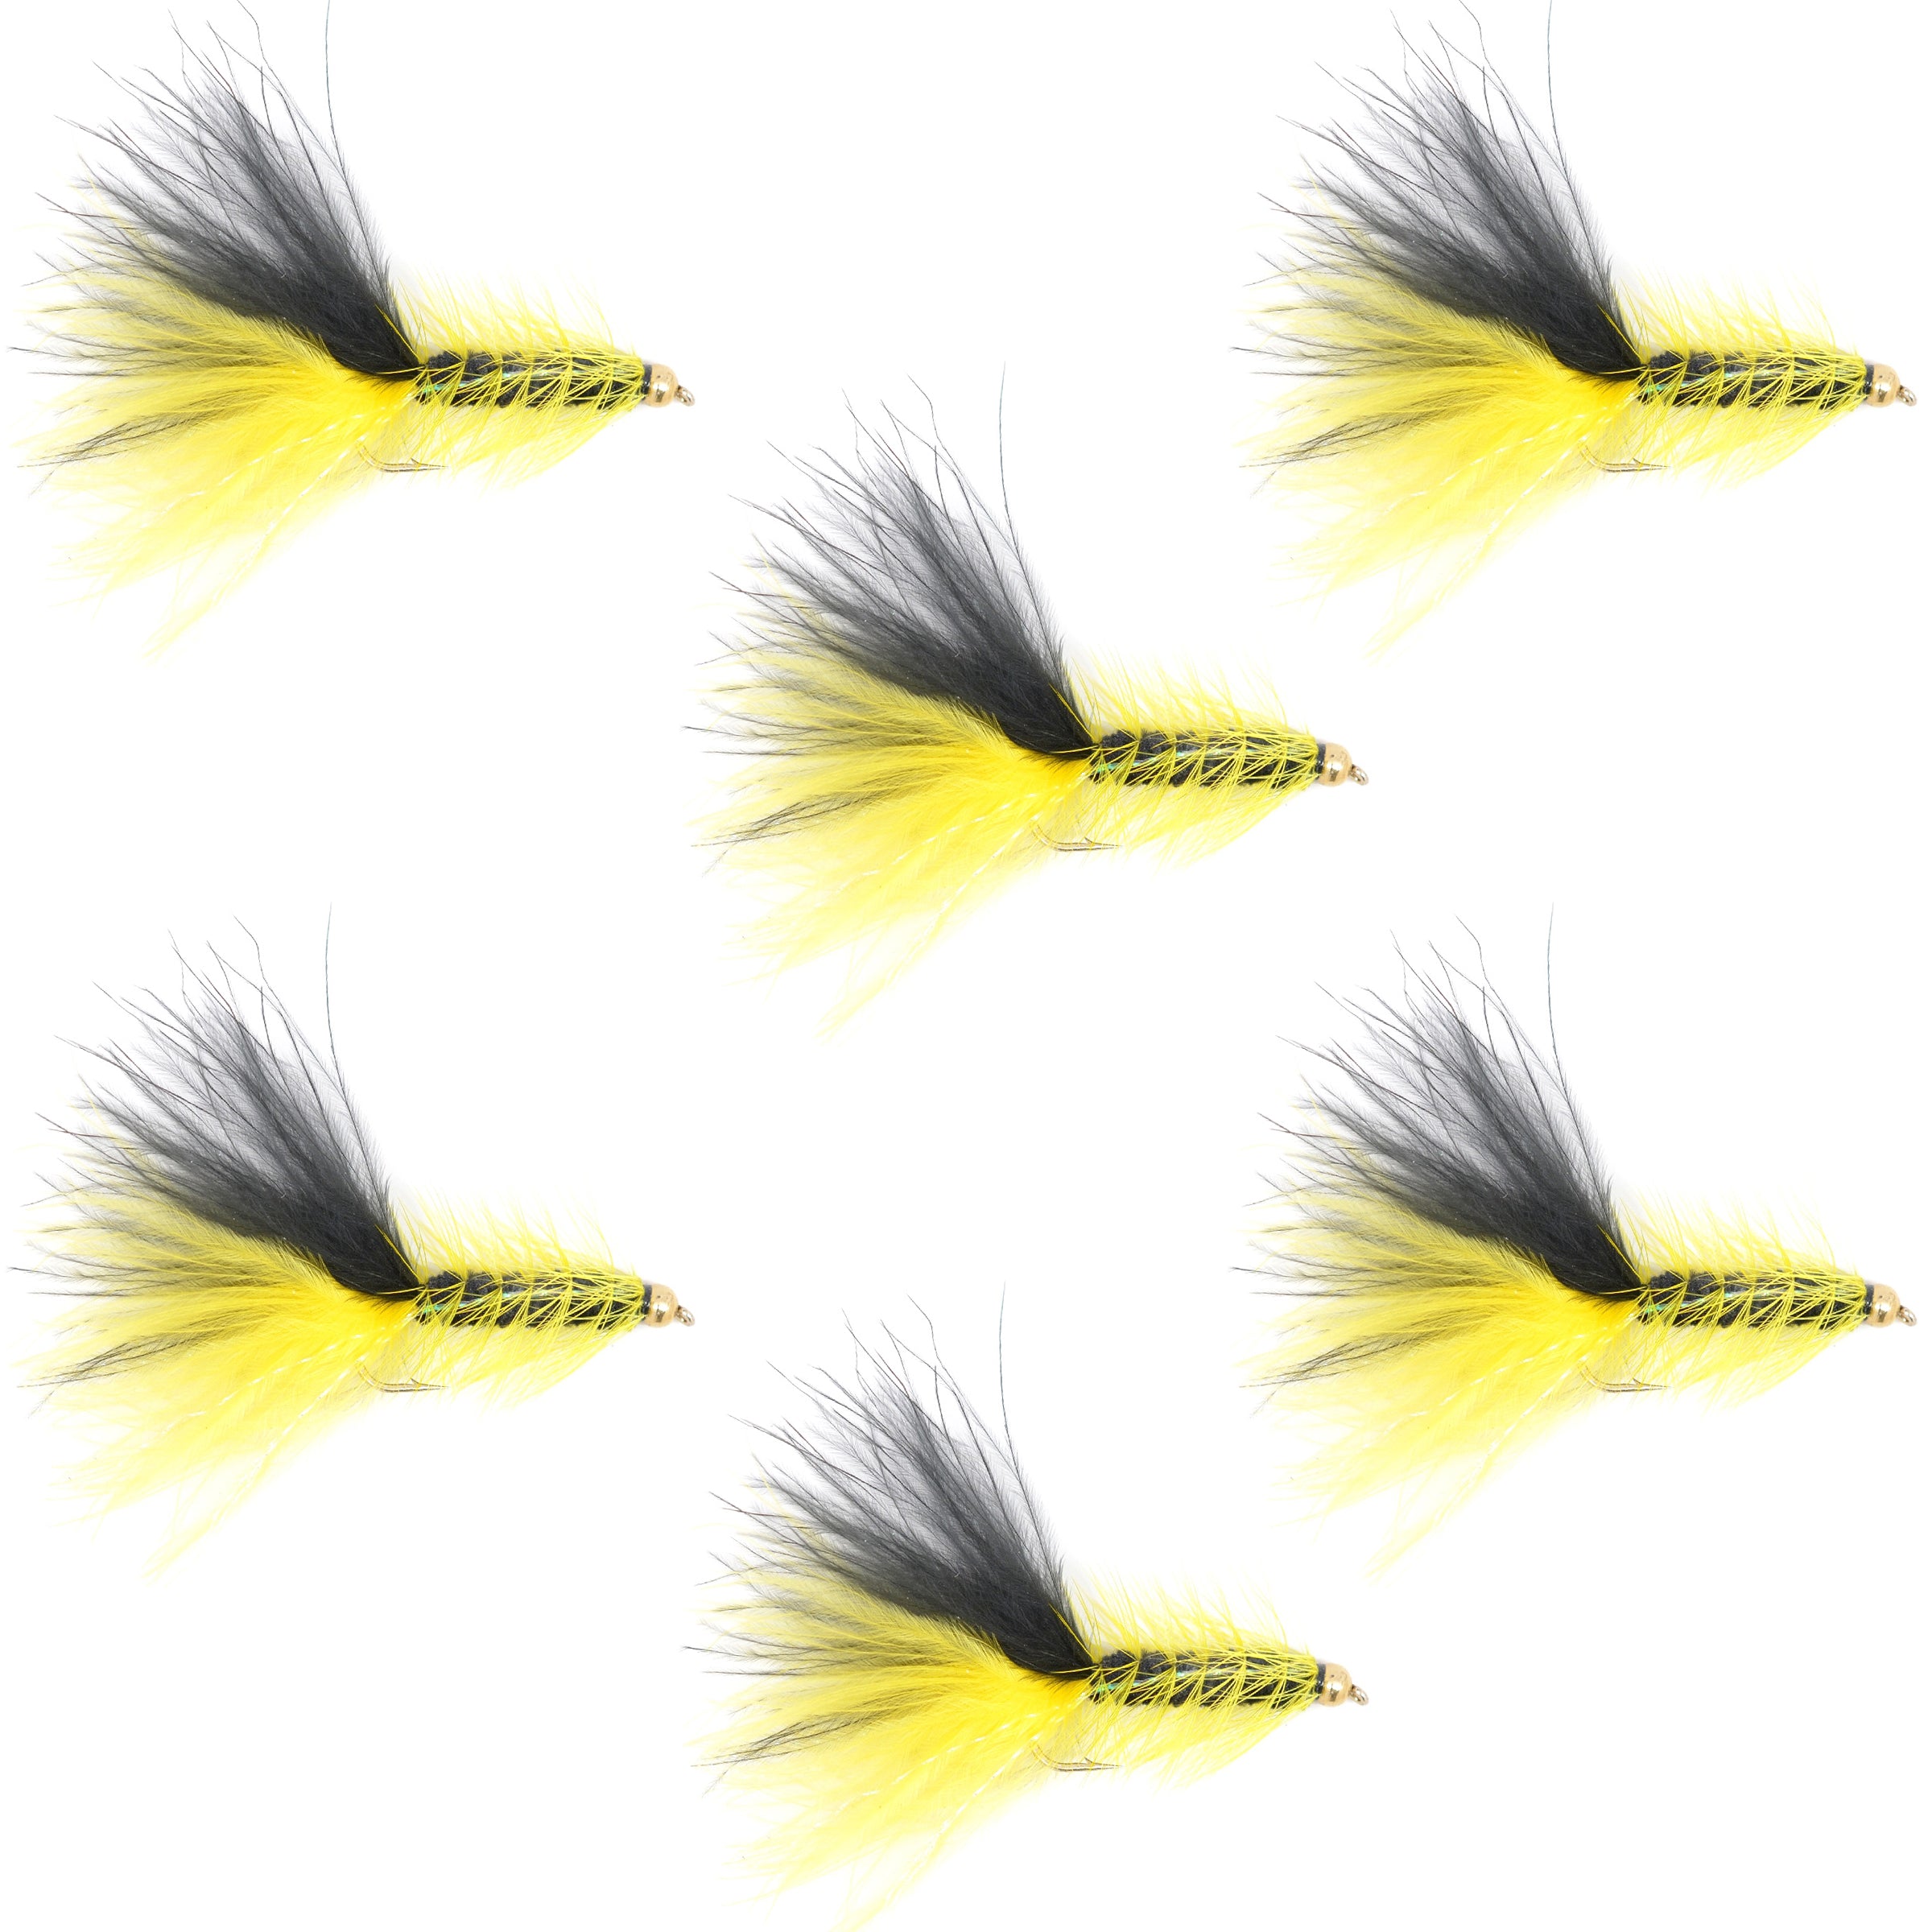 Moscas serpentinas clásicas con cabeza de cuentas de cristal, color amarillo y negro, juego de 6 moscas para pesca con mosca de trucha, tamaño de anzuelo 4